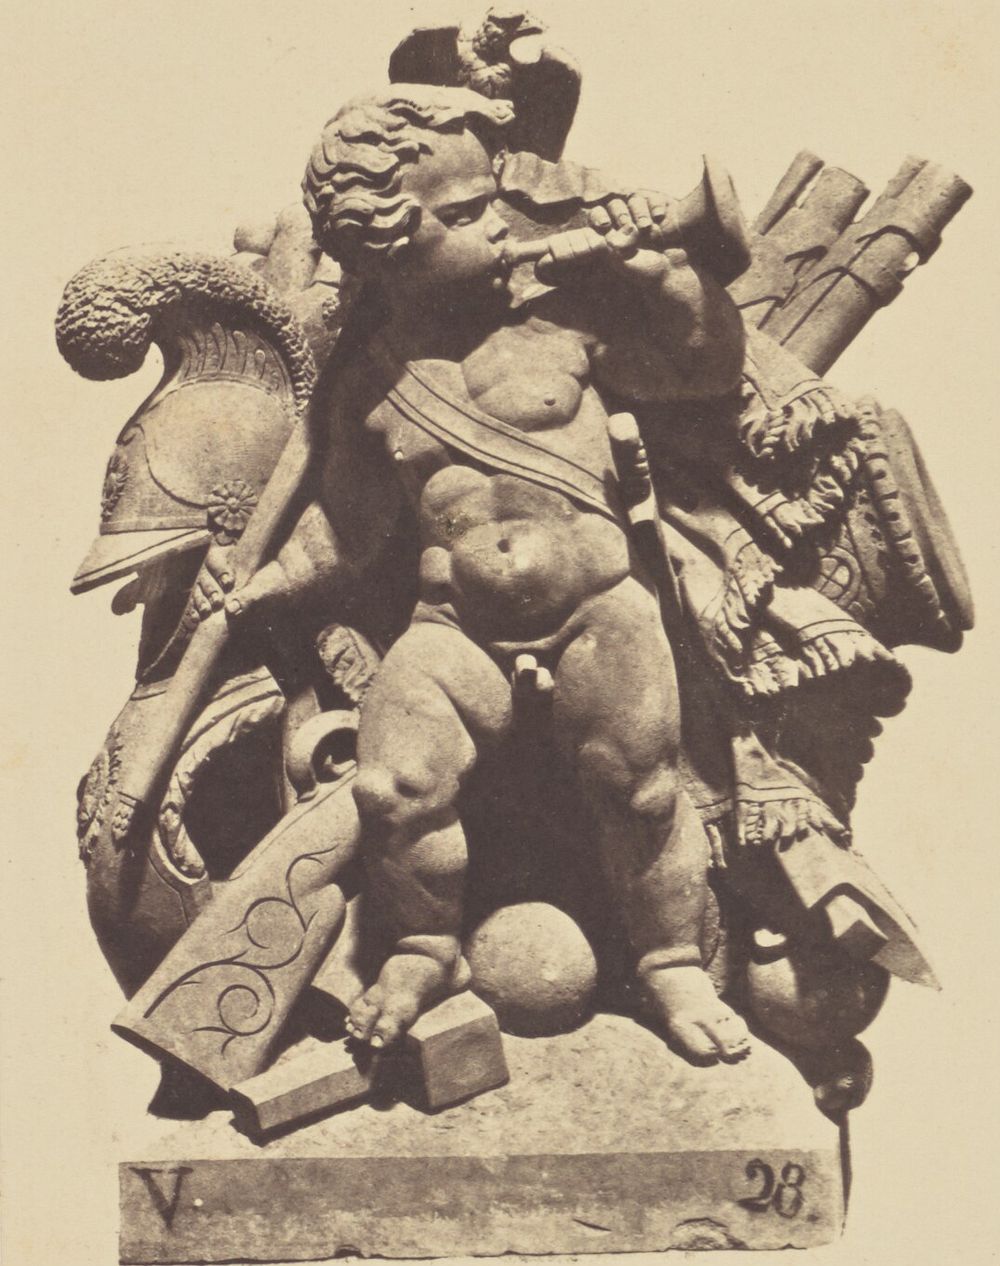 "Le Guerre", Sculpture by Democrito Gandolphi, Decoration of the Louvre, Paris by Édouard Baldus